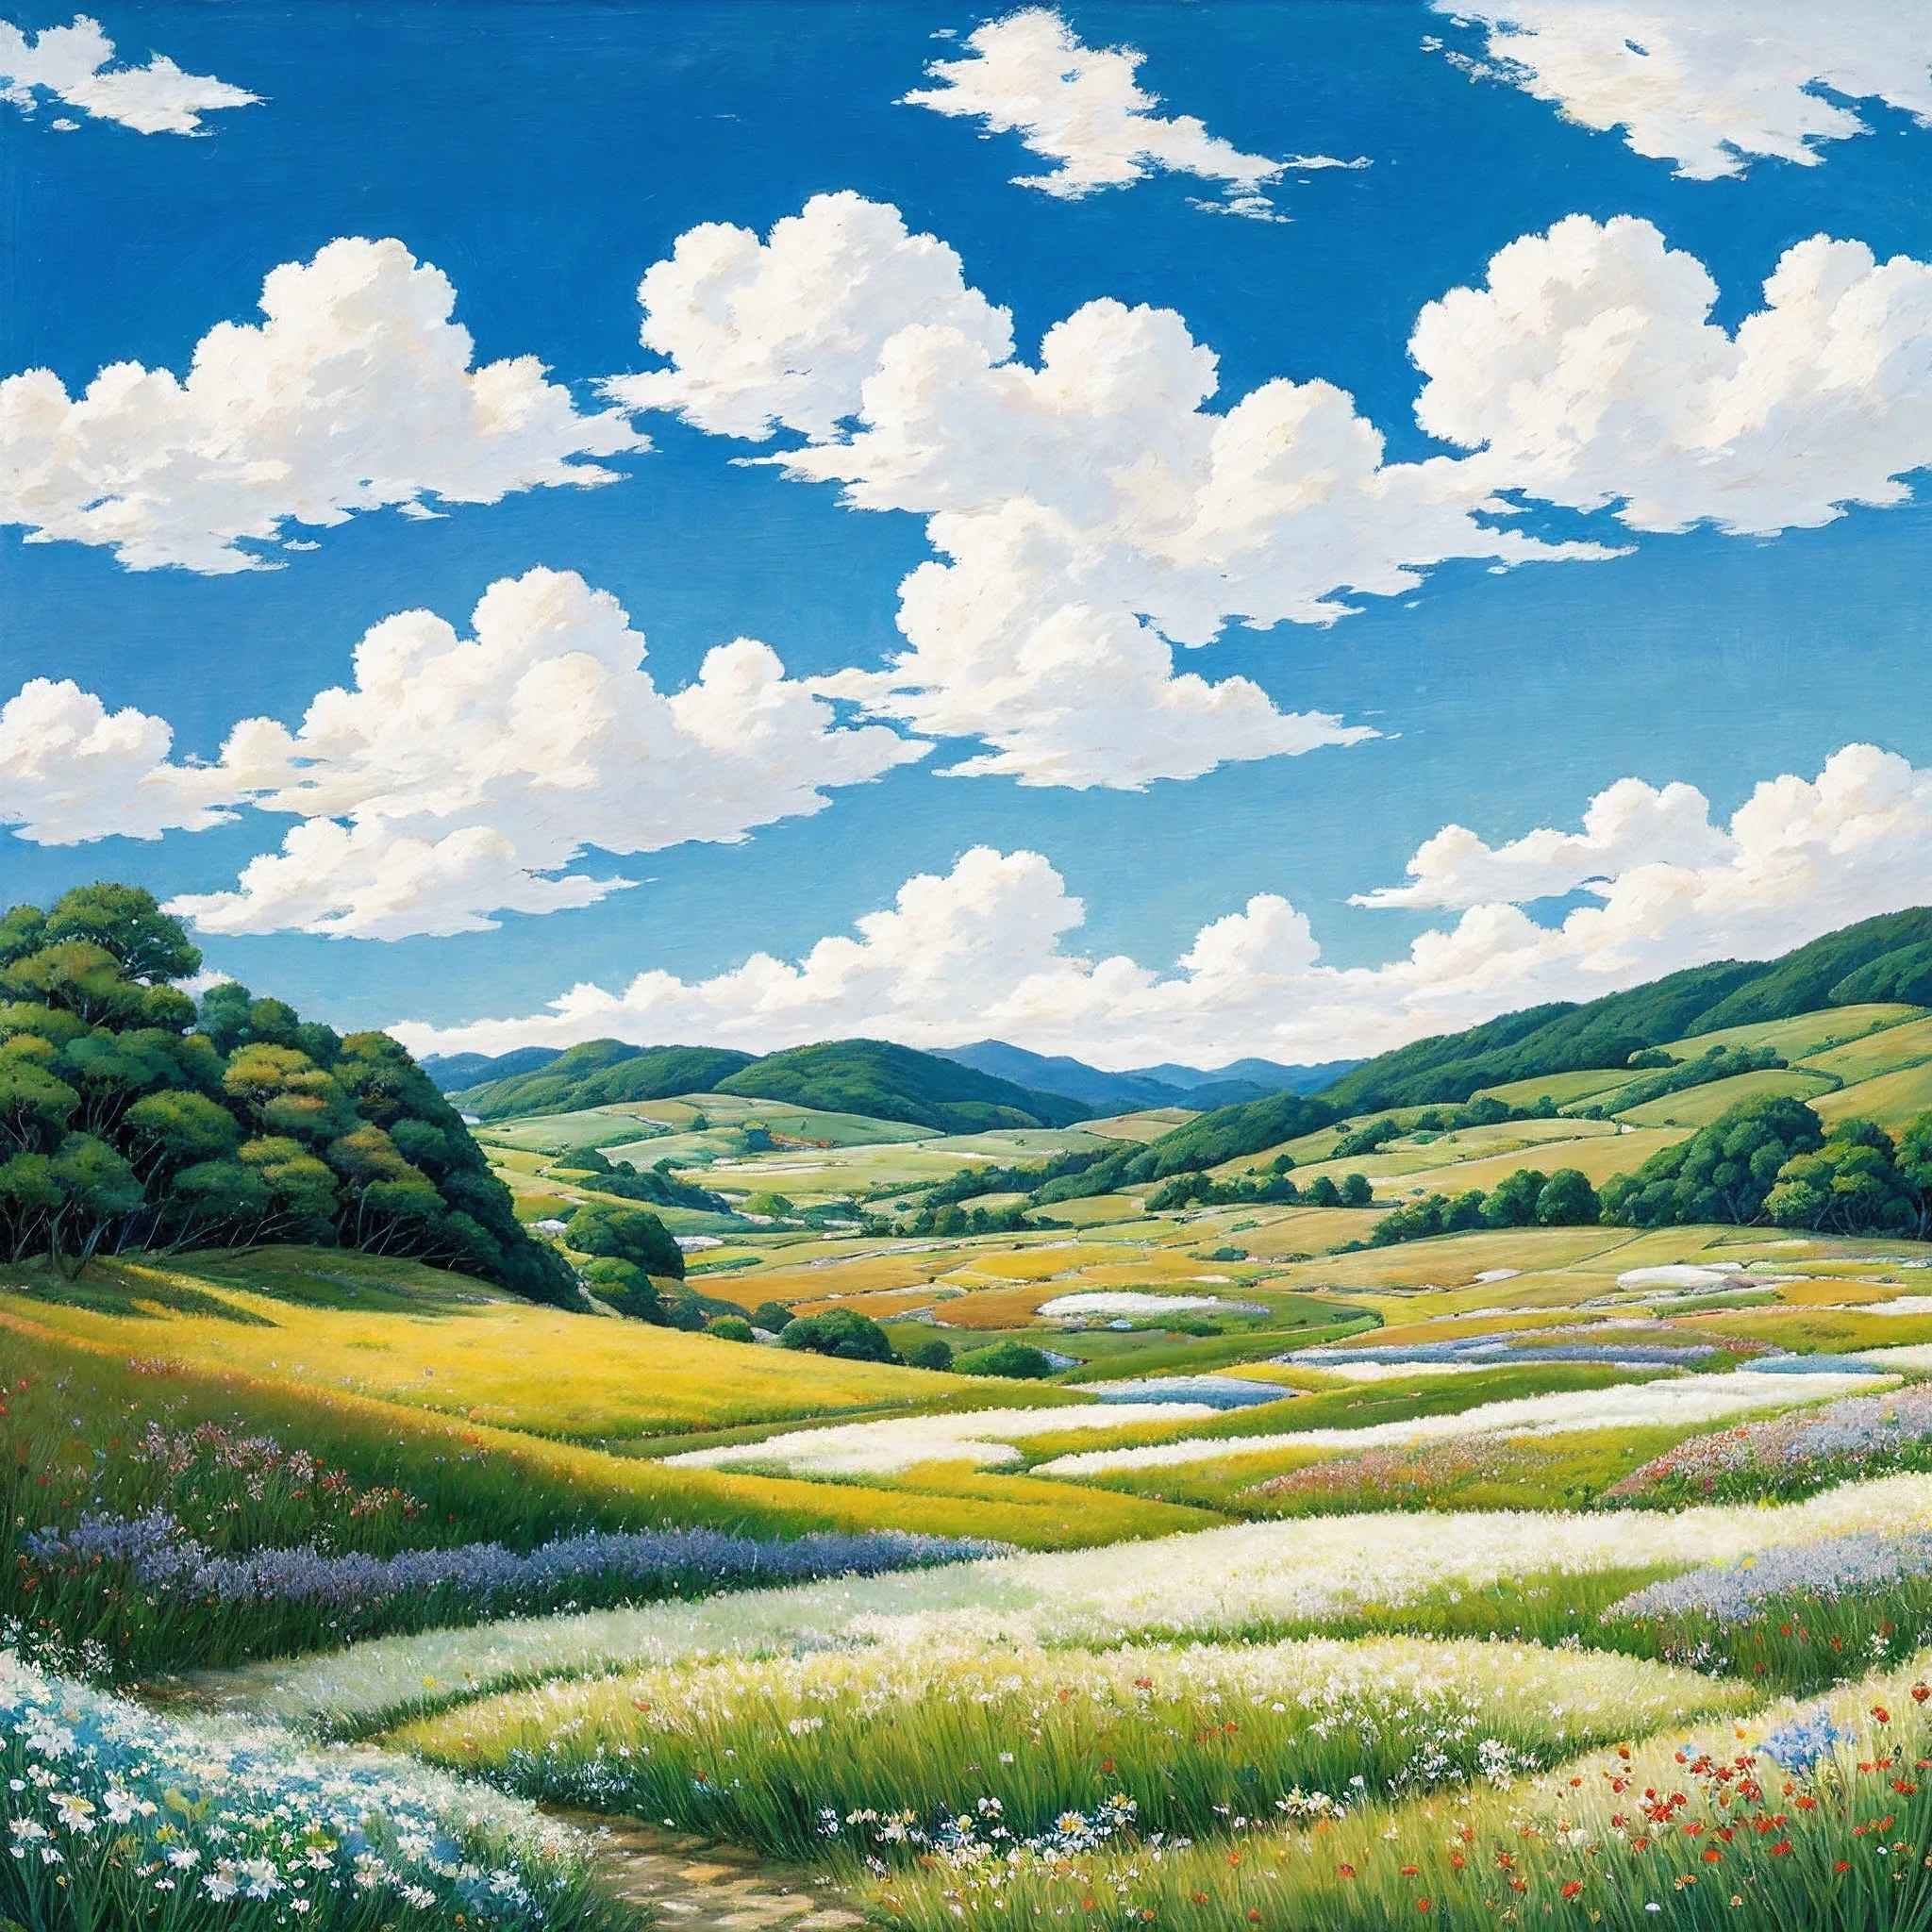 實際的, 真正的, 美麗而令人驚嘆的風景油畫吉卜力工作室宮崎駿&#39;藍天白雲的花瓣草原